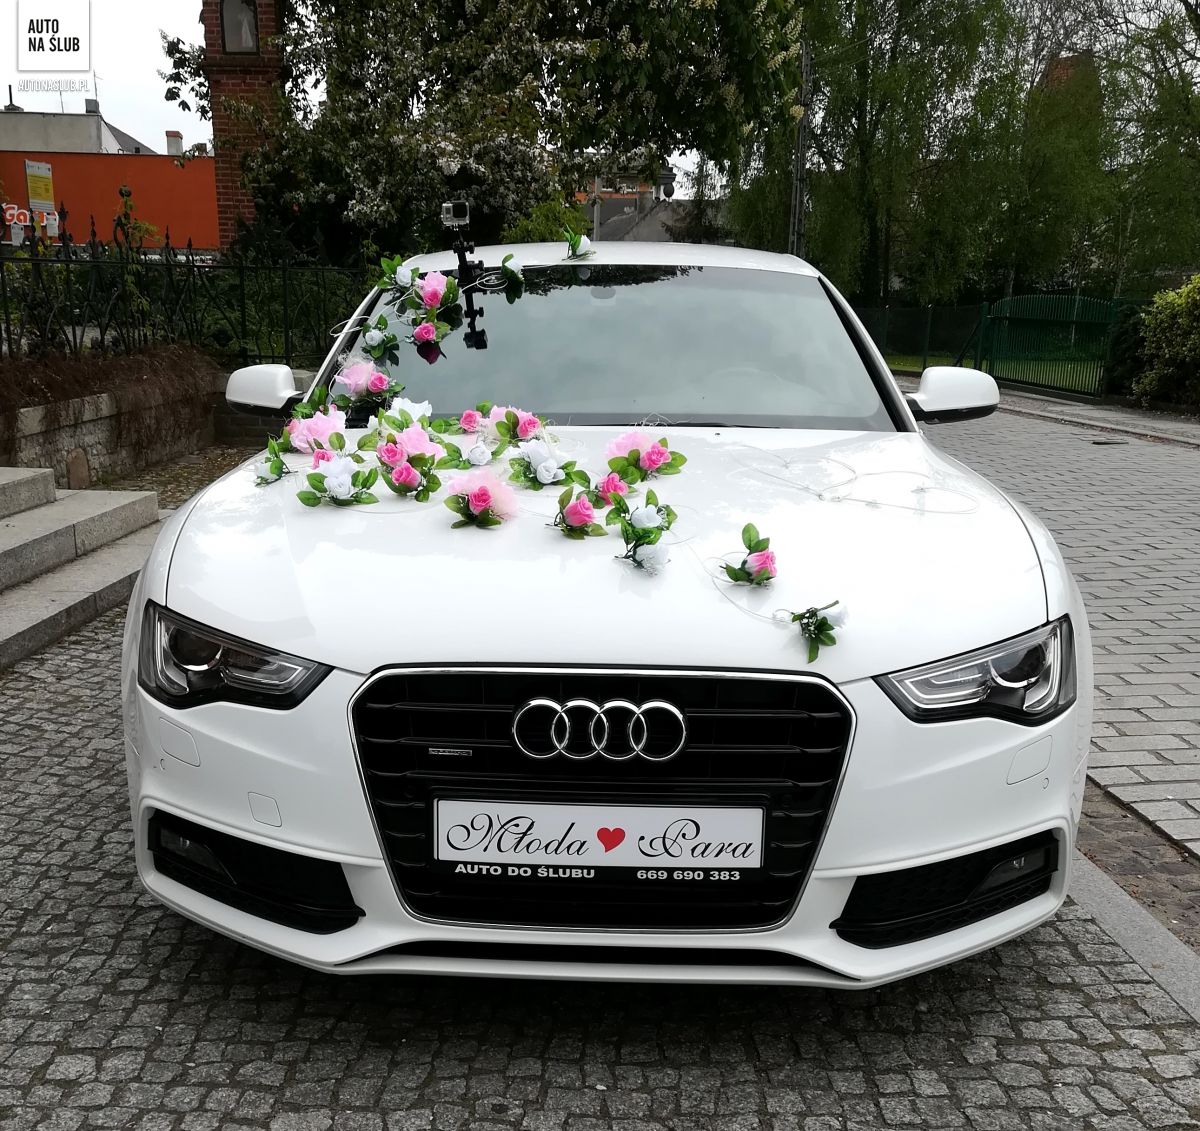 Audi A5 Sline Auto do ślubu, samochód do ślubu